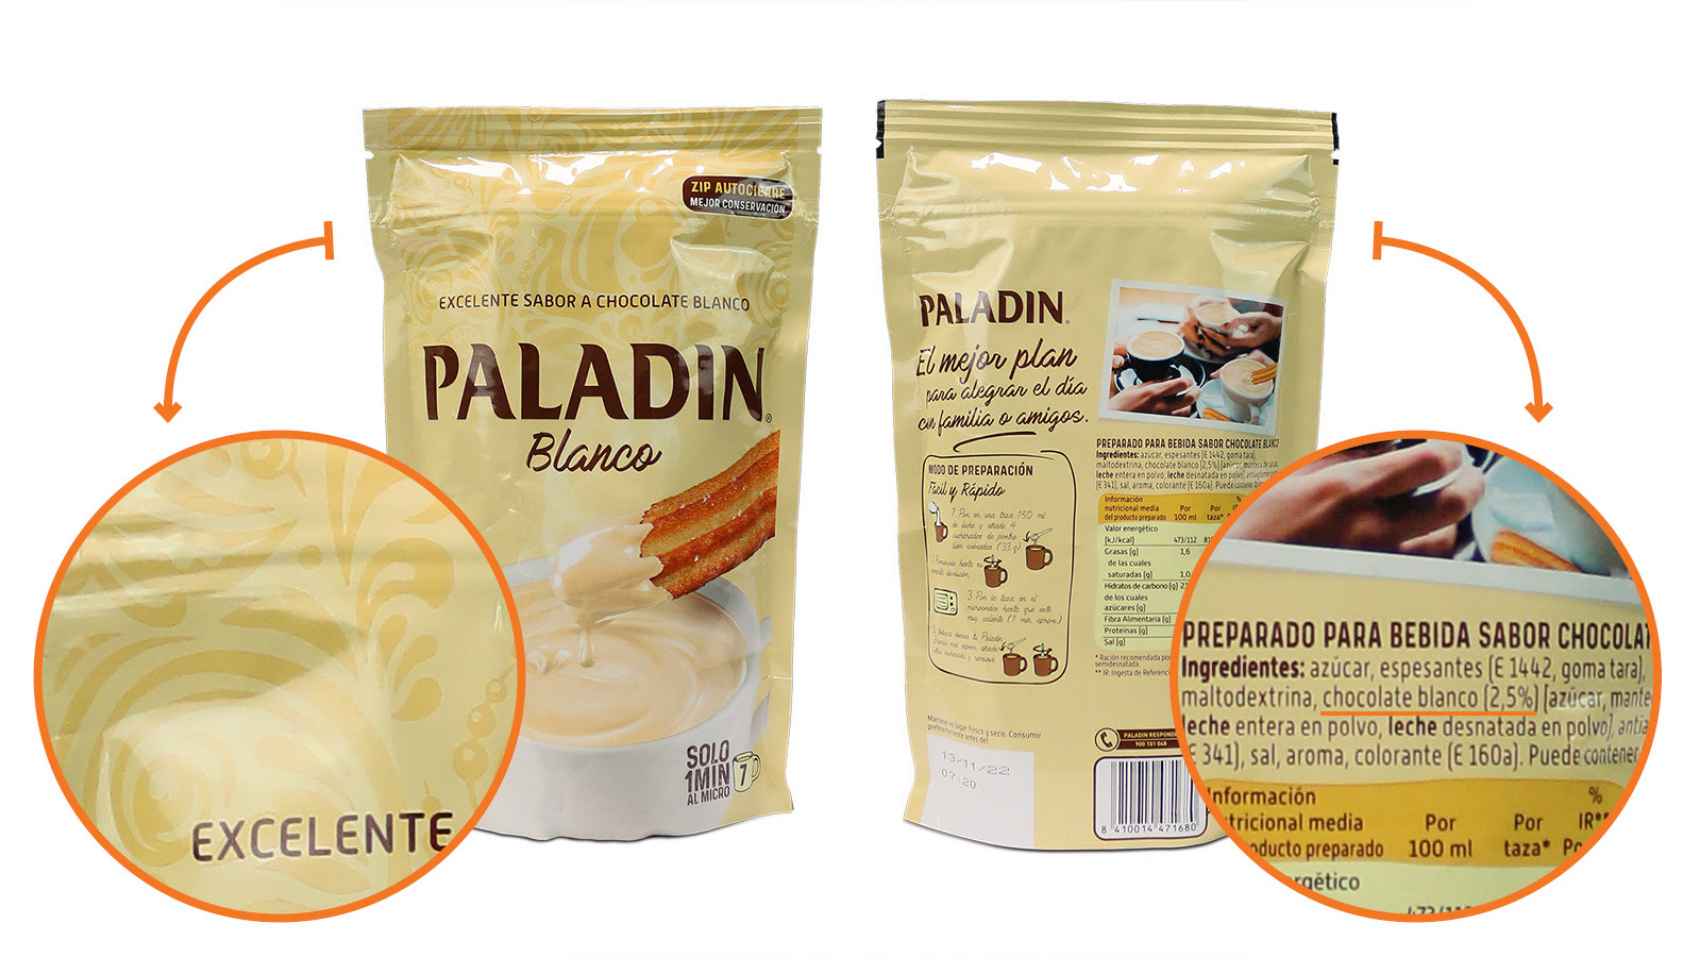 Los cambios en el etiquetado de Paladin blanco.